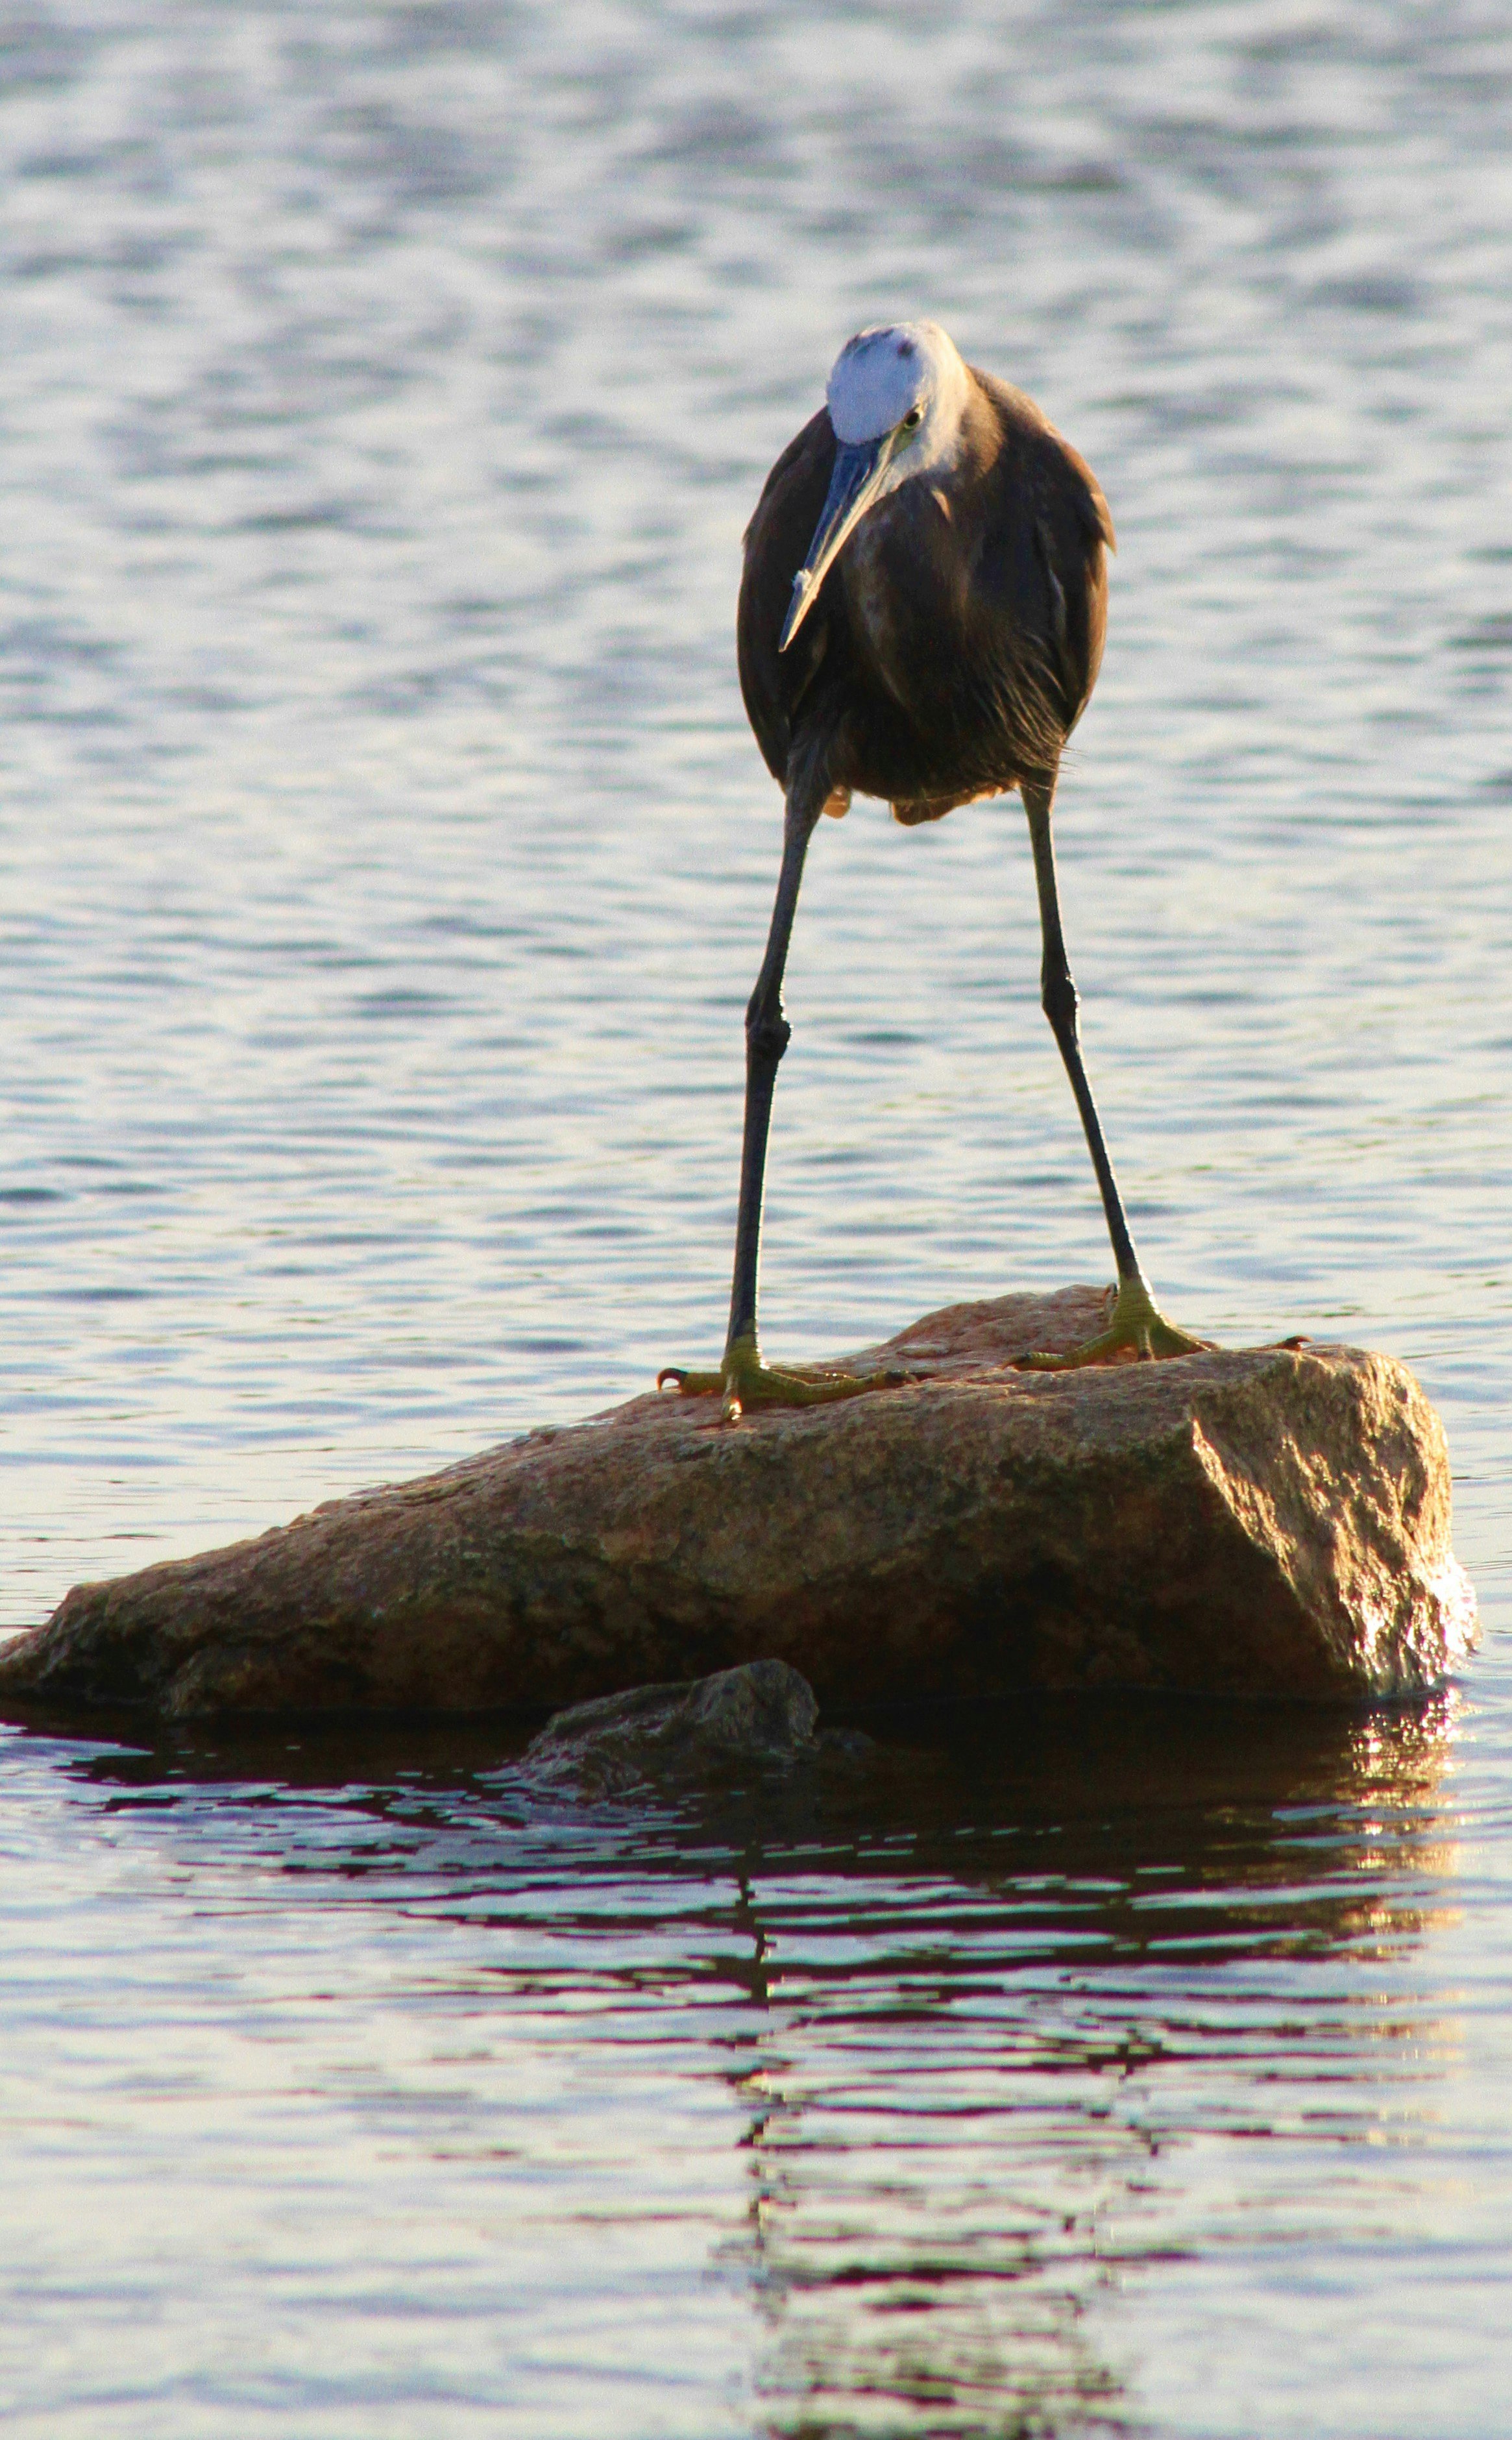 black long beak bird on rock near body of water during daytime